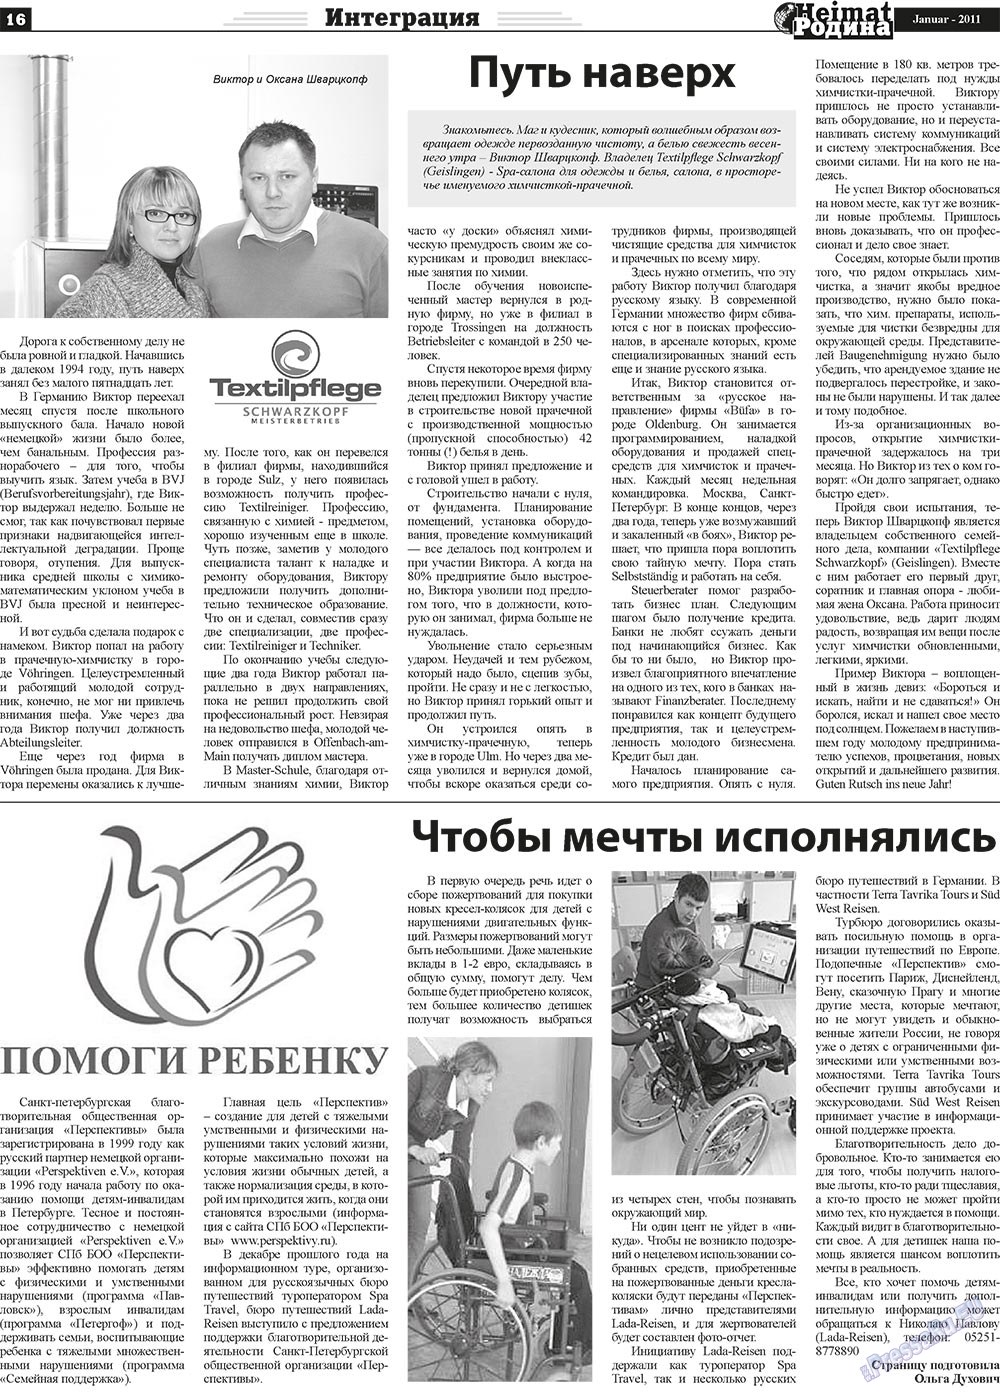 Heimat-Родина (газета). 2011 год, номер 1, стр. 16